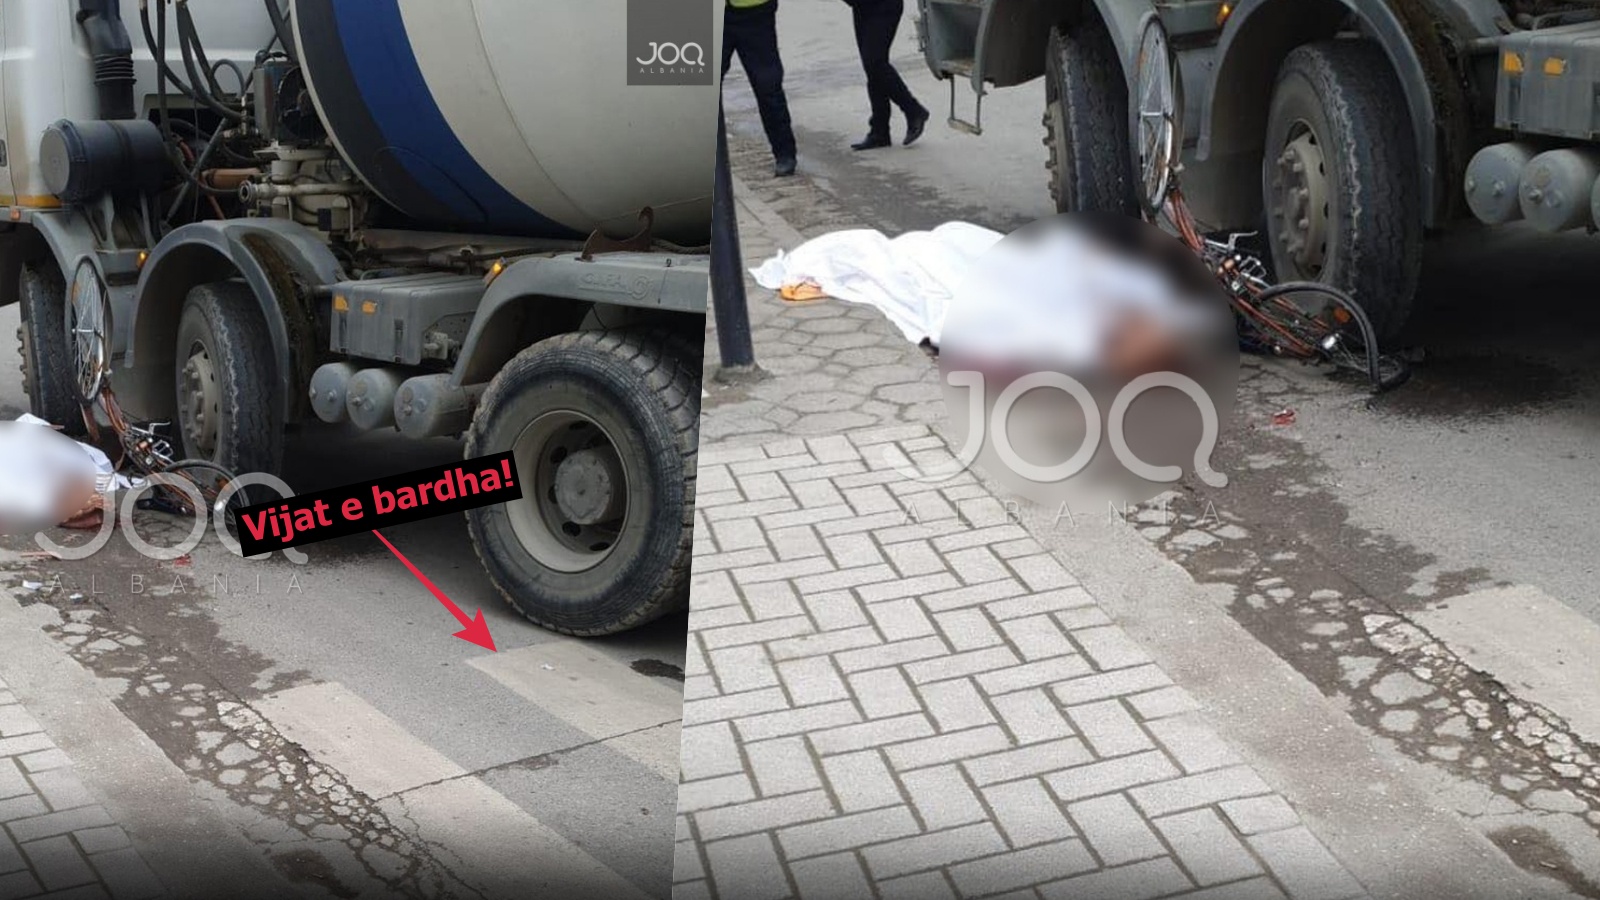 “Shoferi ishte i dehur”/Aksidenti tragjik në Durrës, betonierja i shtypi kokën qytetarit tek vijat e bardha